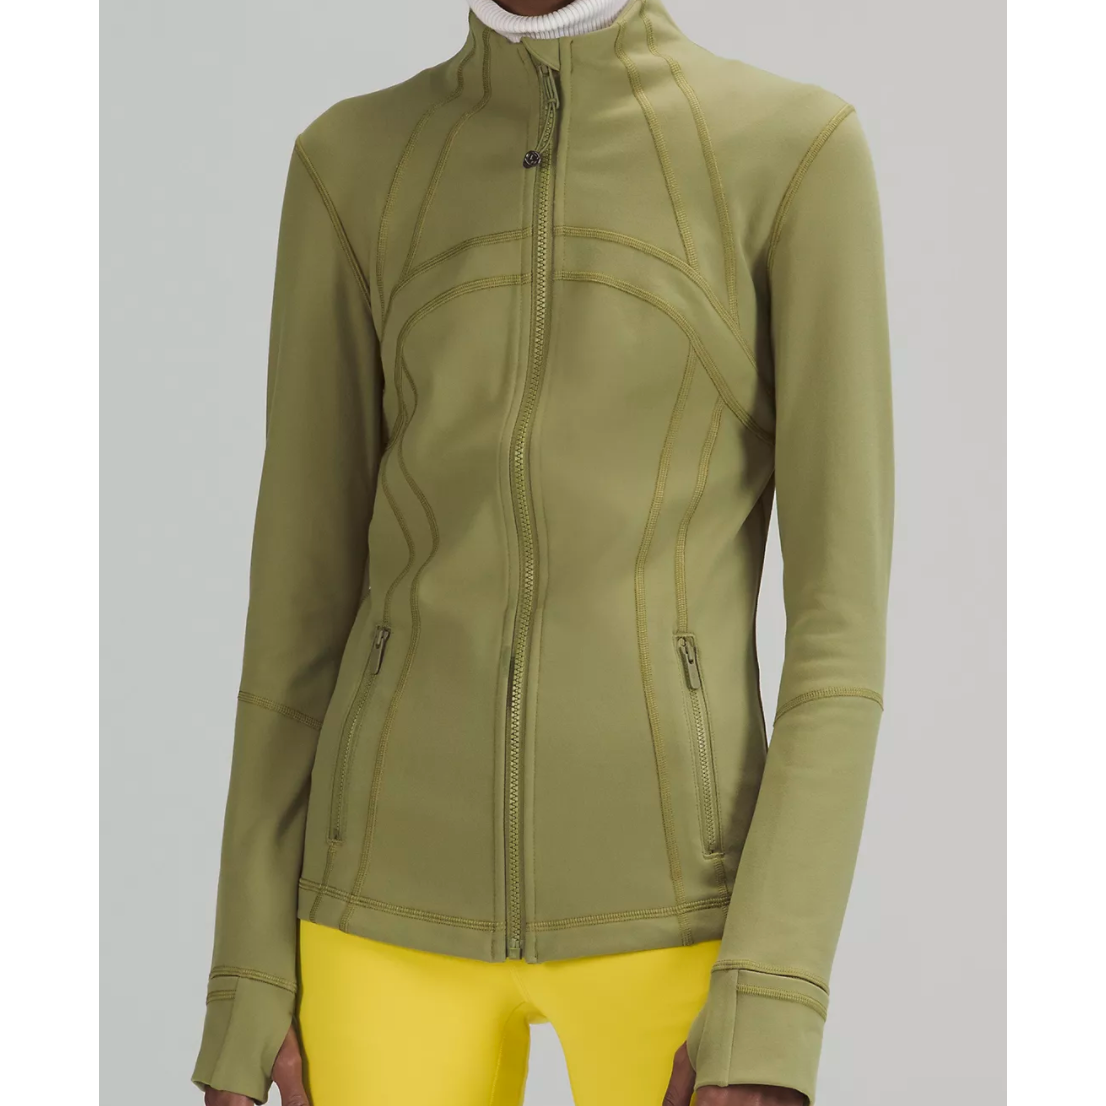 lululemon athletica, Jackets & Coats, Nwt Lululemon Define Jacket Luon  Nomad Size 2